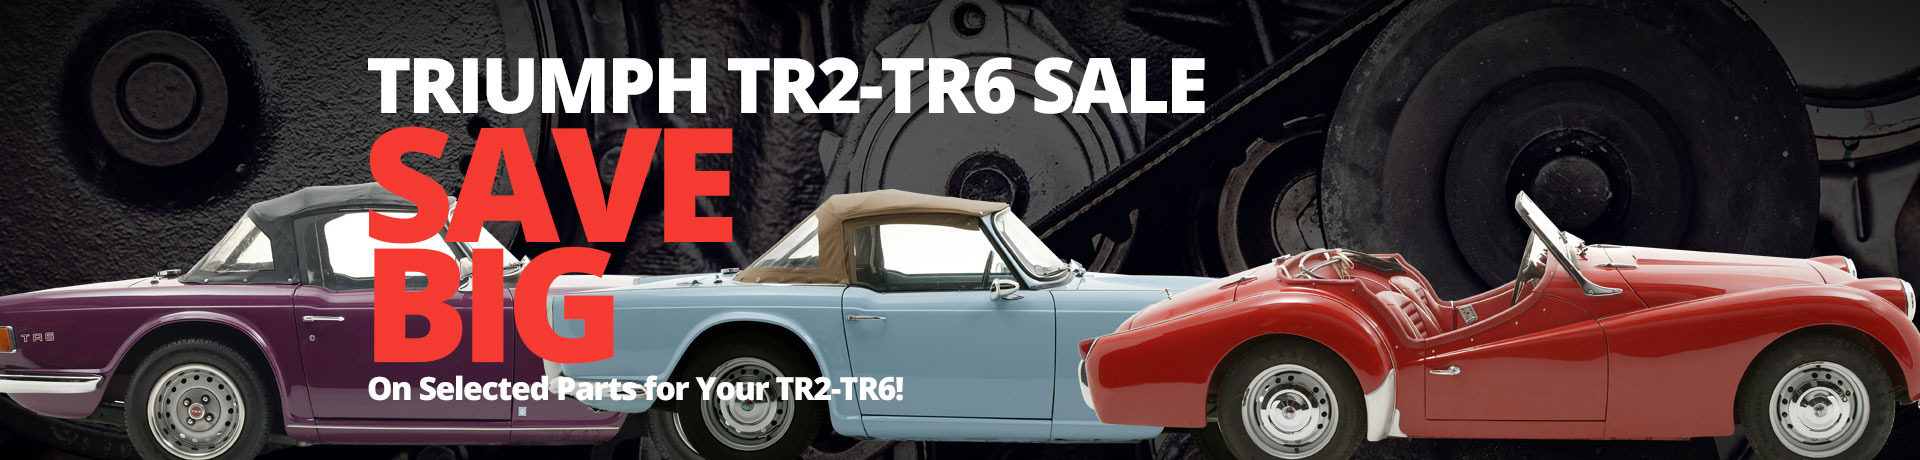 Triumph TR2-TR6 Sale